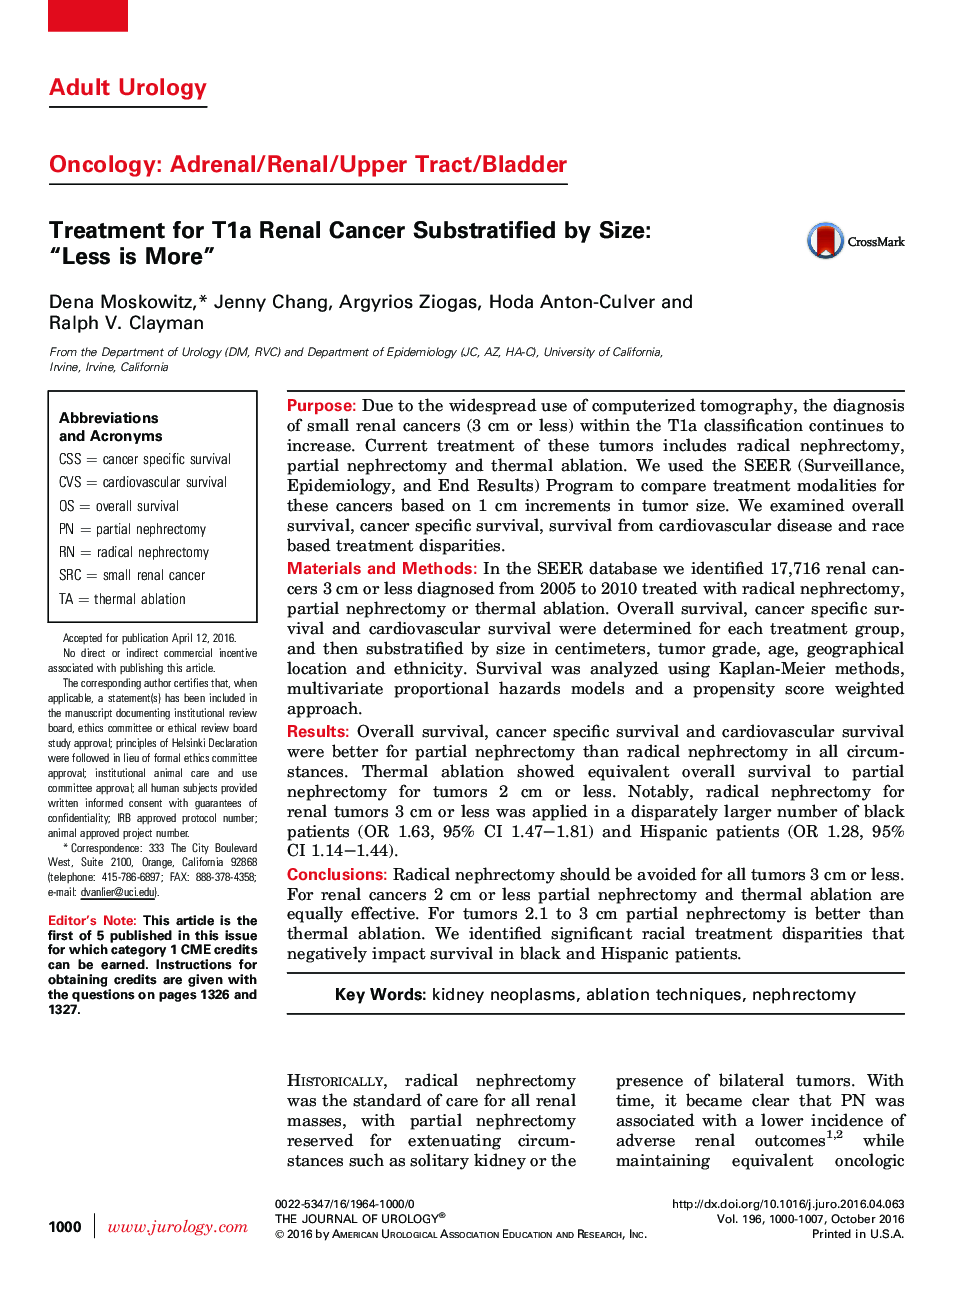 درمان T1A Substratified کلیوی سرطان با حجم: "کم هم زیاد است"